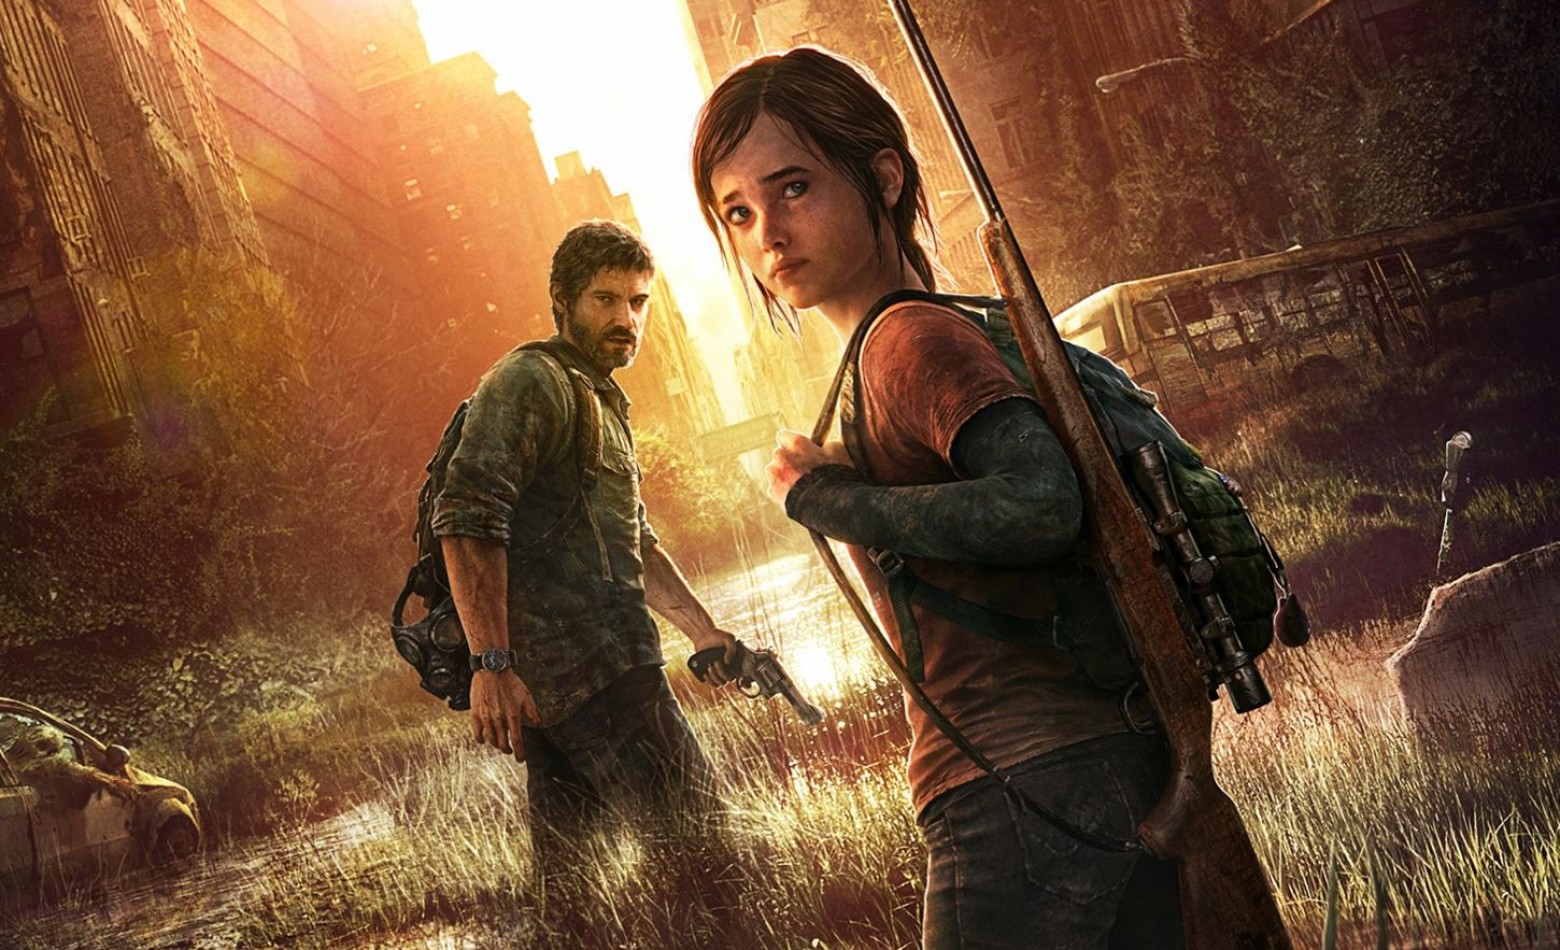 Acompanhe o NGP em mais um gameplay de The Last of Us: Remastered